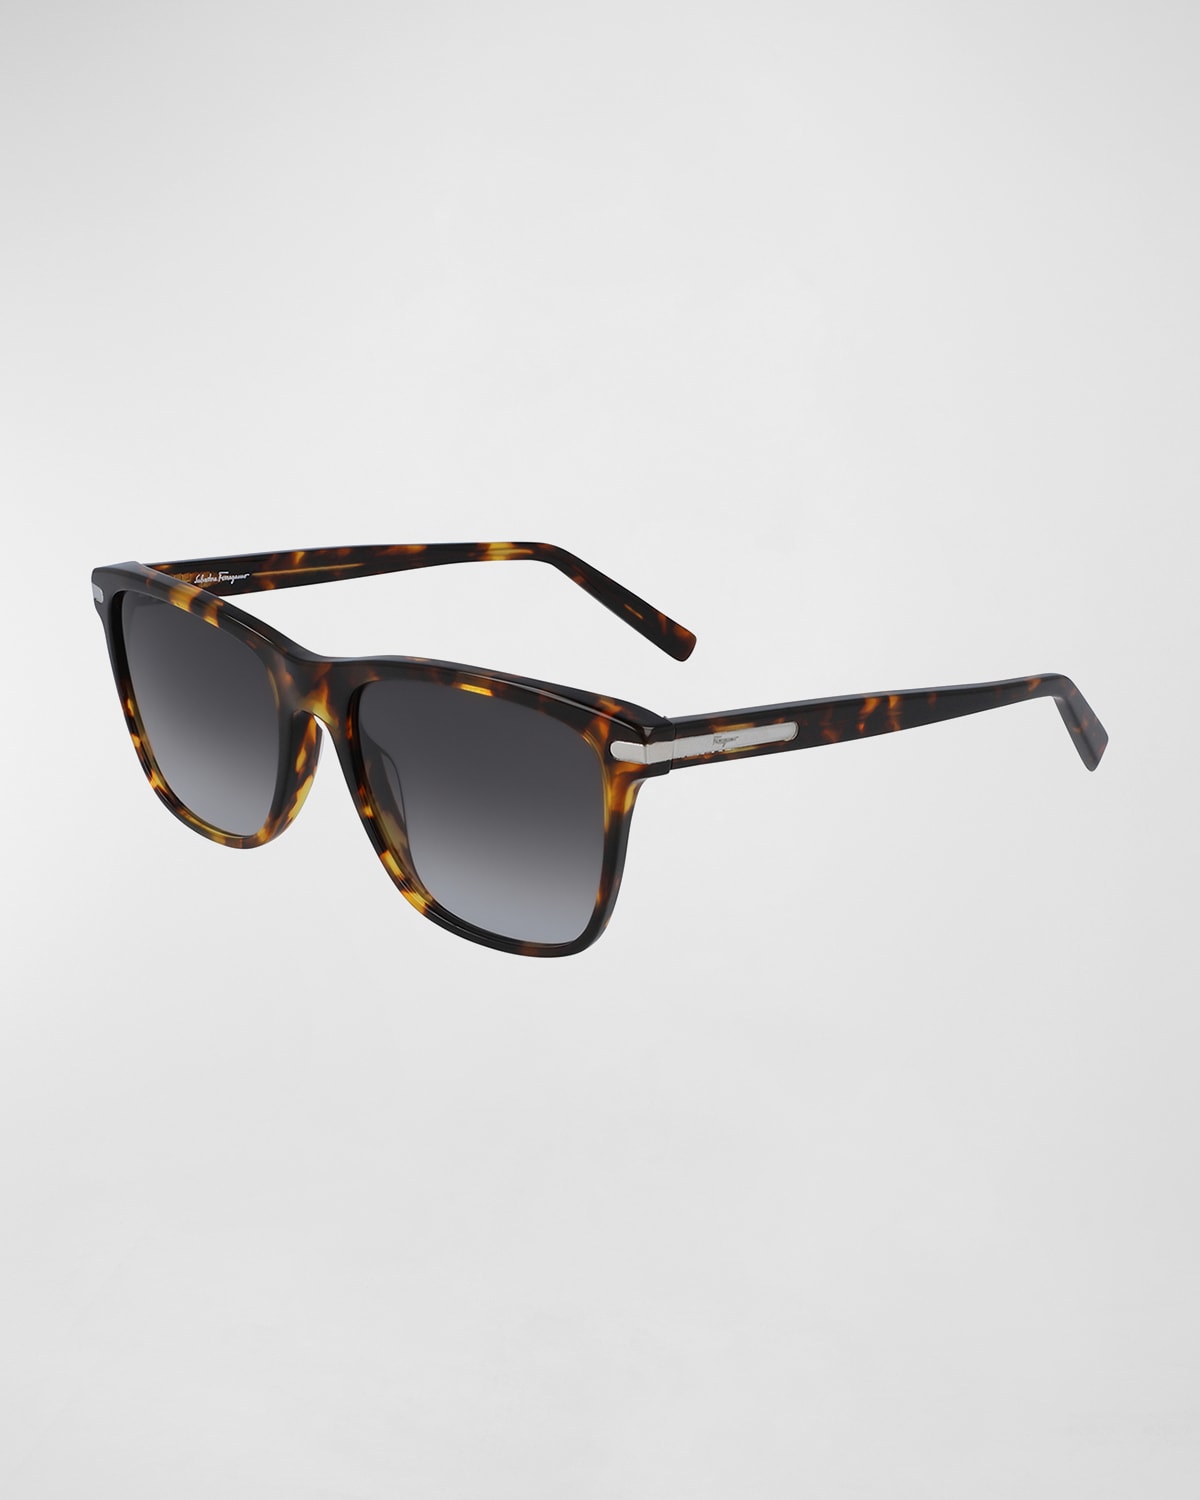 Ferragamo Men's Square Sunglasses With Metal Detail In Dark Tortoise